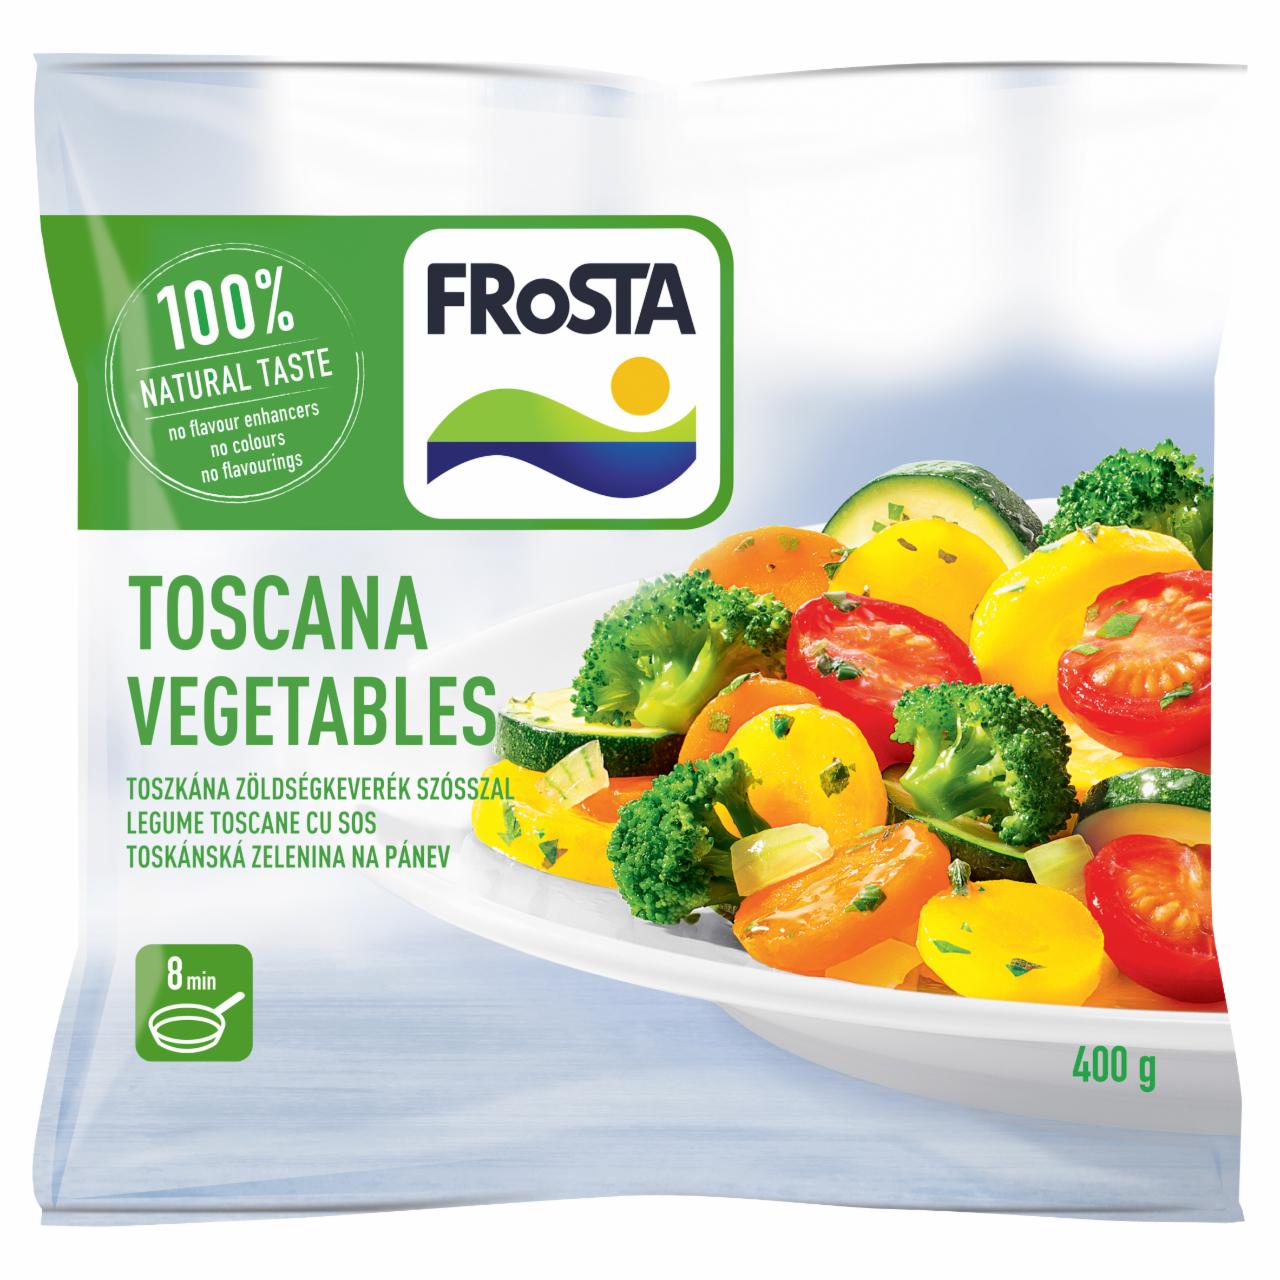 Képek - FRoSTA gyorsfagyasztott toszkána zöldségkeverék szósszal 400 g